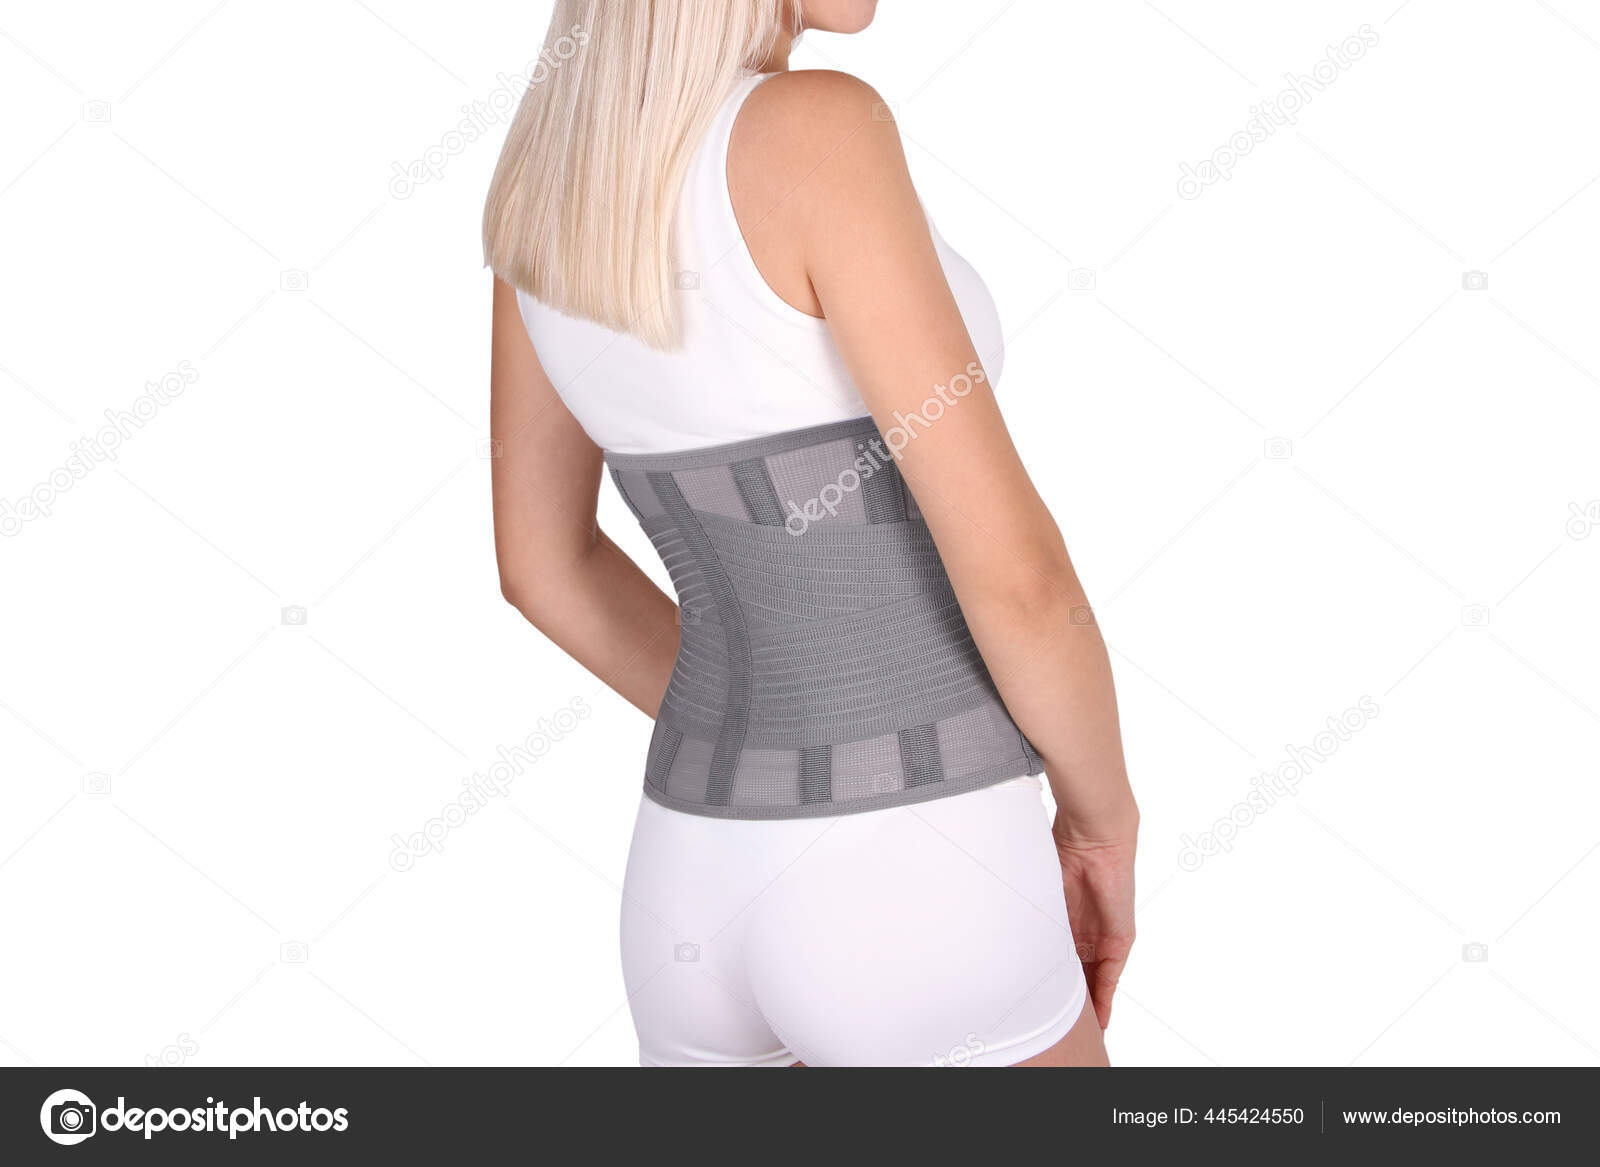 https://st2.depositphotos.com/33757592/44542/i/1600/depositphotos_445424550-stock-photo-orthopedic-lumbar-corset-human-body.jpg